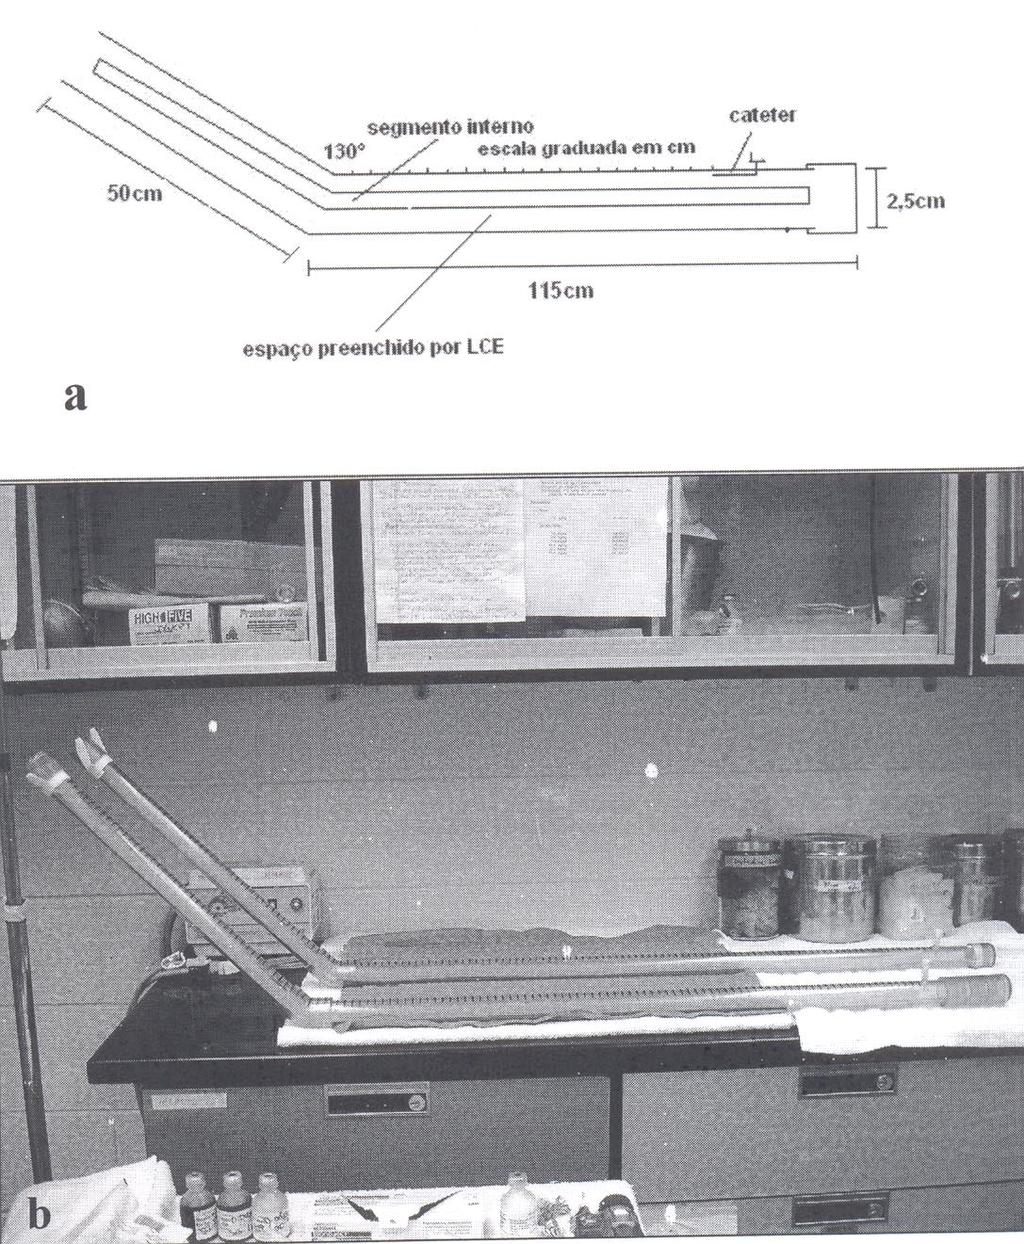 386 Polydoro et al. Figura 1 - Desenho esquemático (a) e imagem (b) representativos do modelo experimental subaracnóide eqüino proposto para avaliação de opióides hiperbáricos.